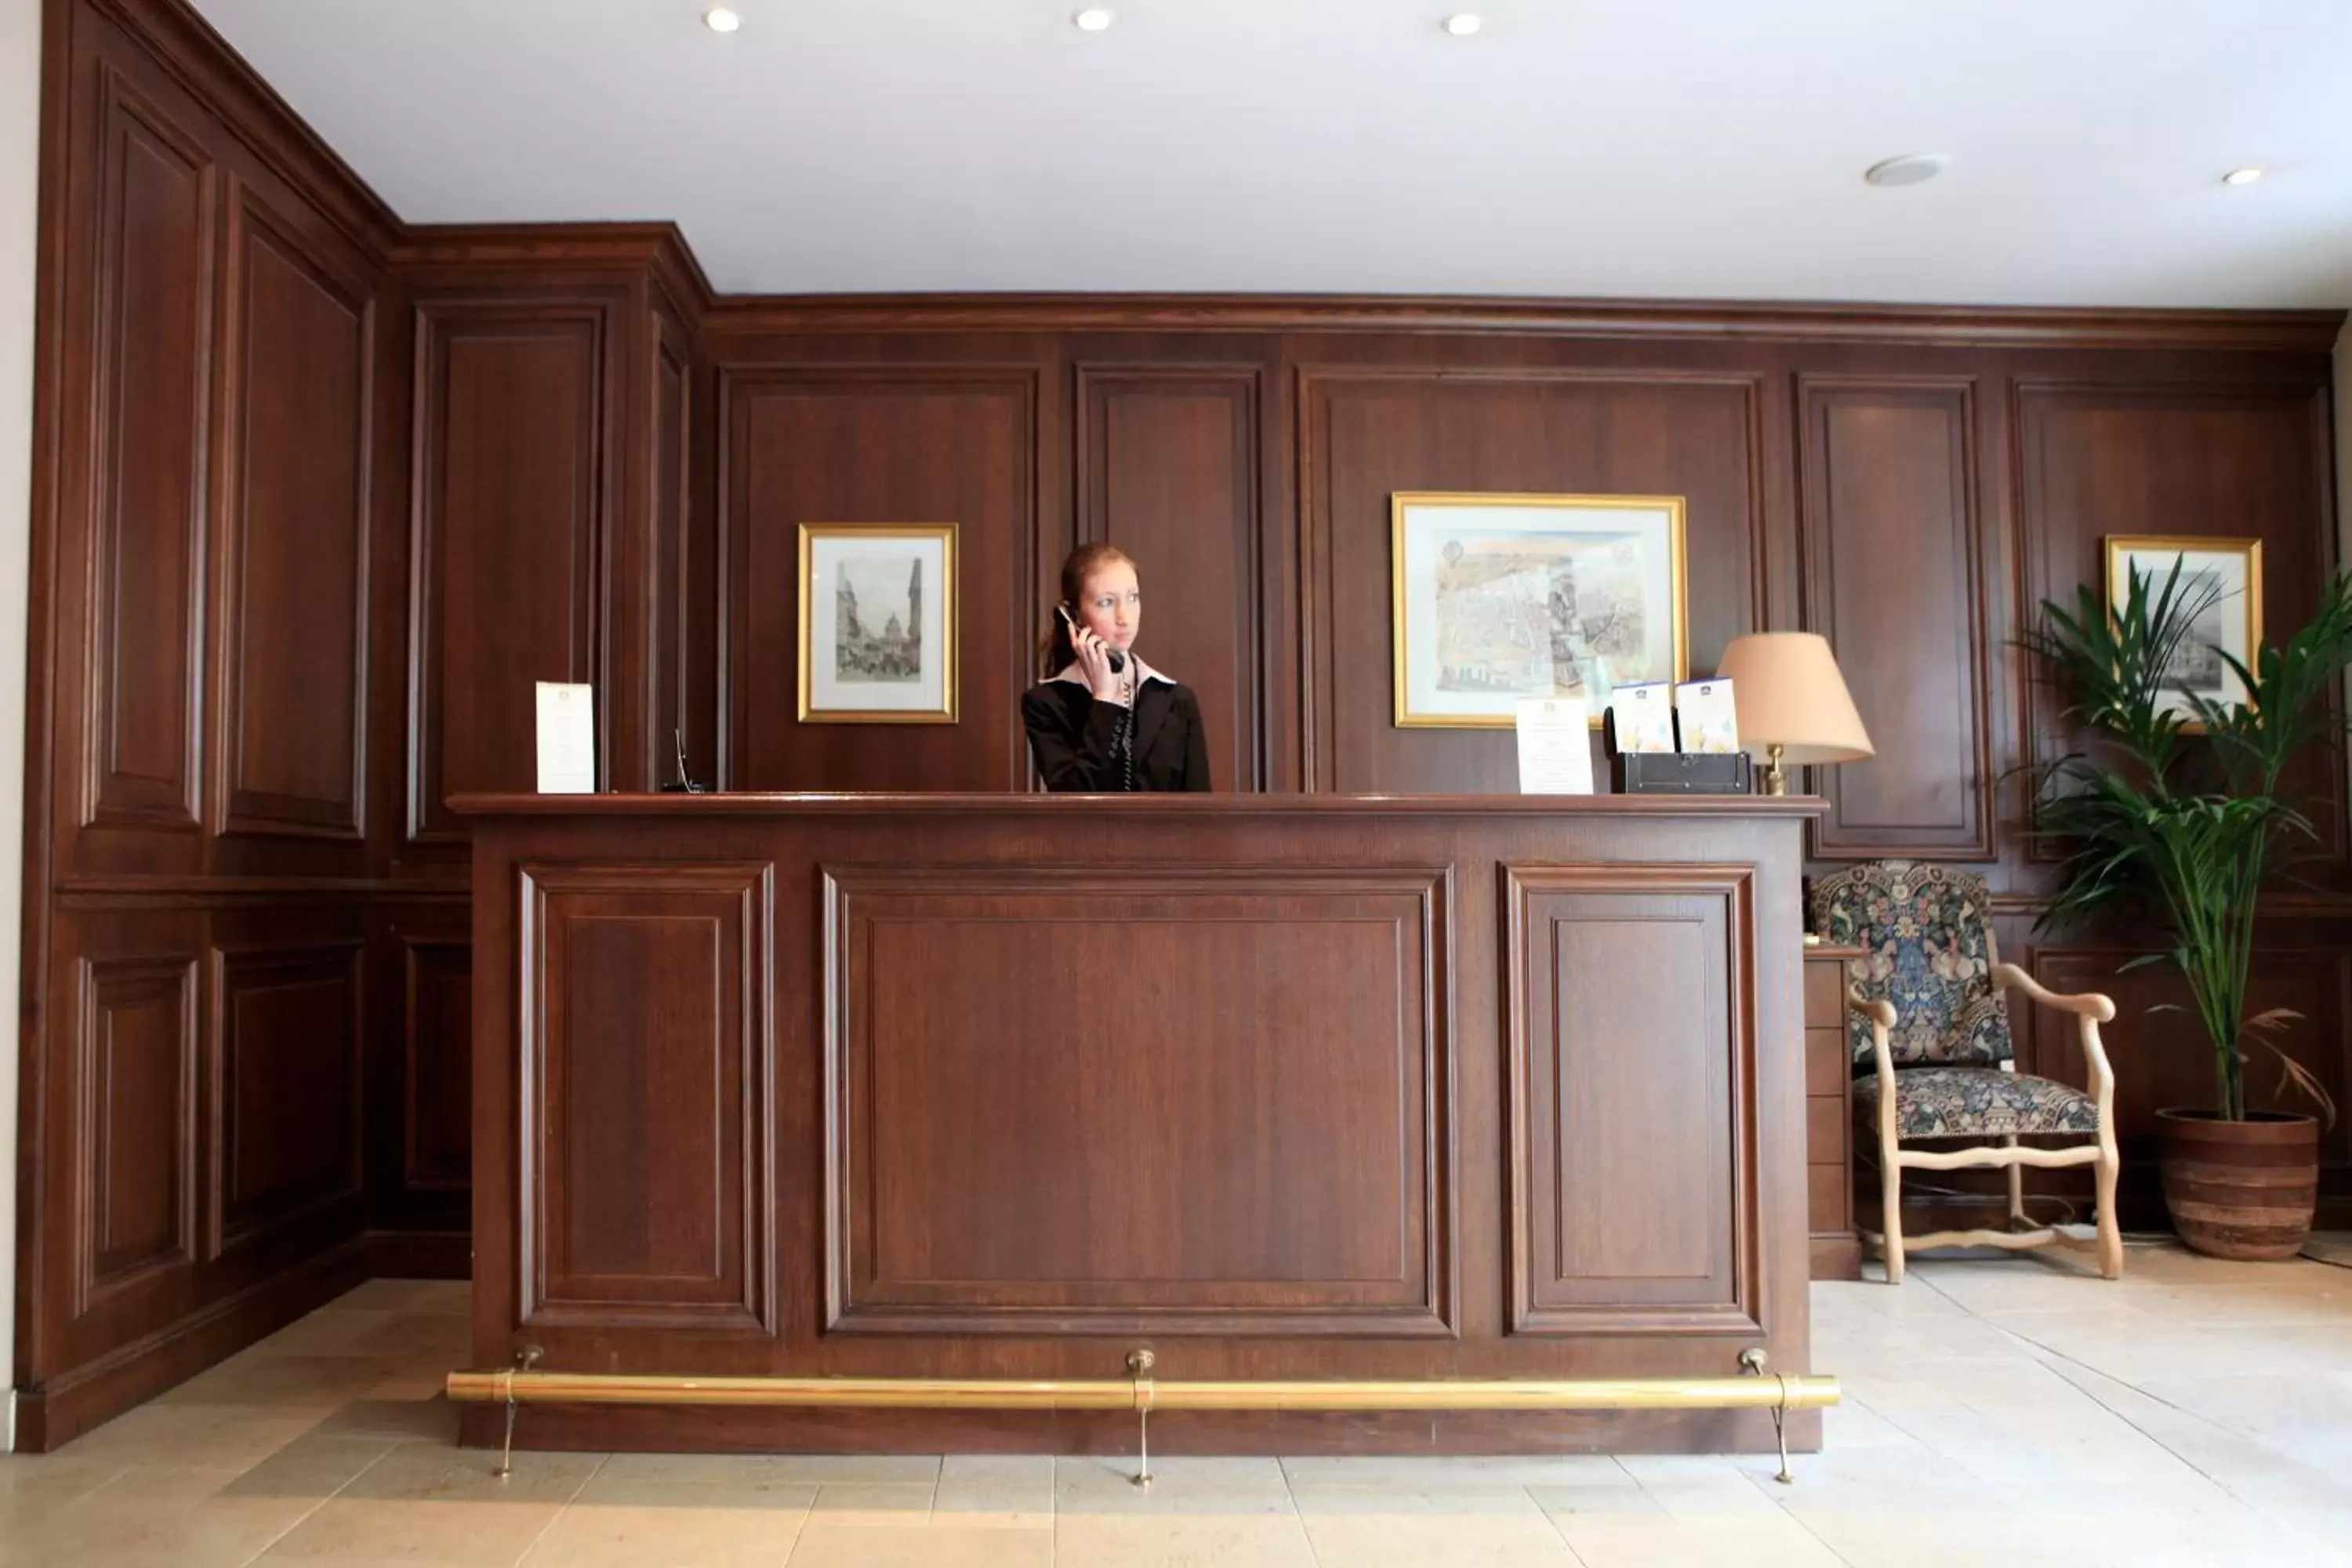 Lobby or reception, Lobby/Reception in Amiral Hôtel